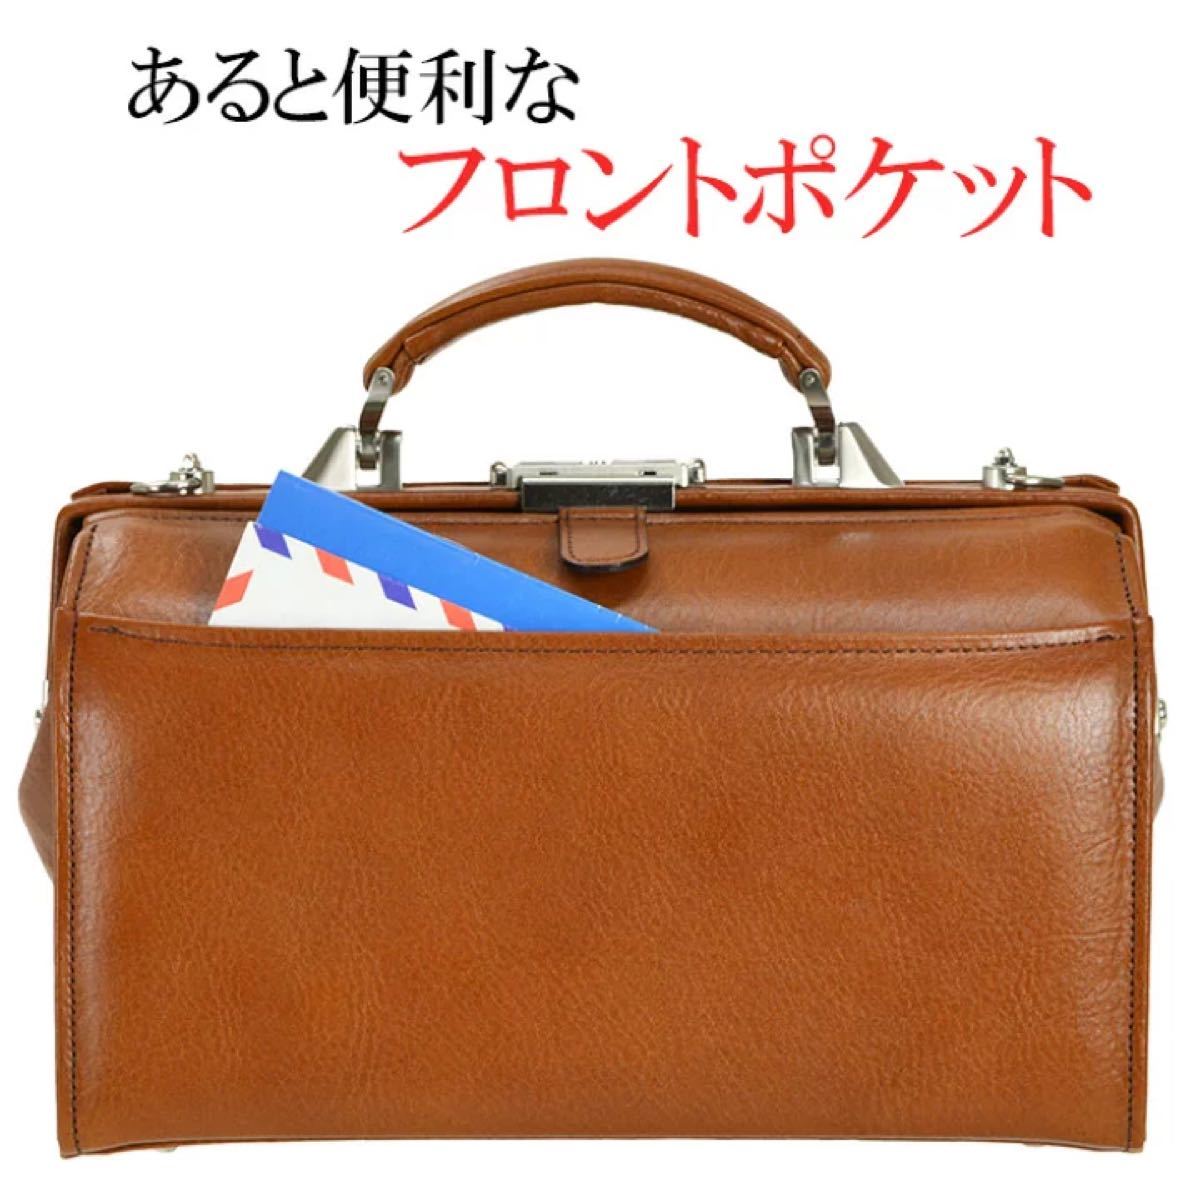 まとめ割引対象 ビジネスバッグ ダレスバッグ メンズ A5 本革 革 セカンドバッグ 日本製 豊岡 22323